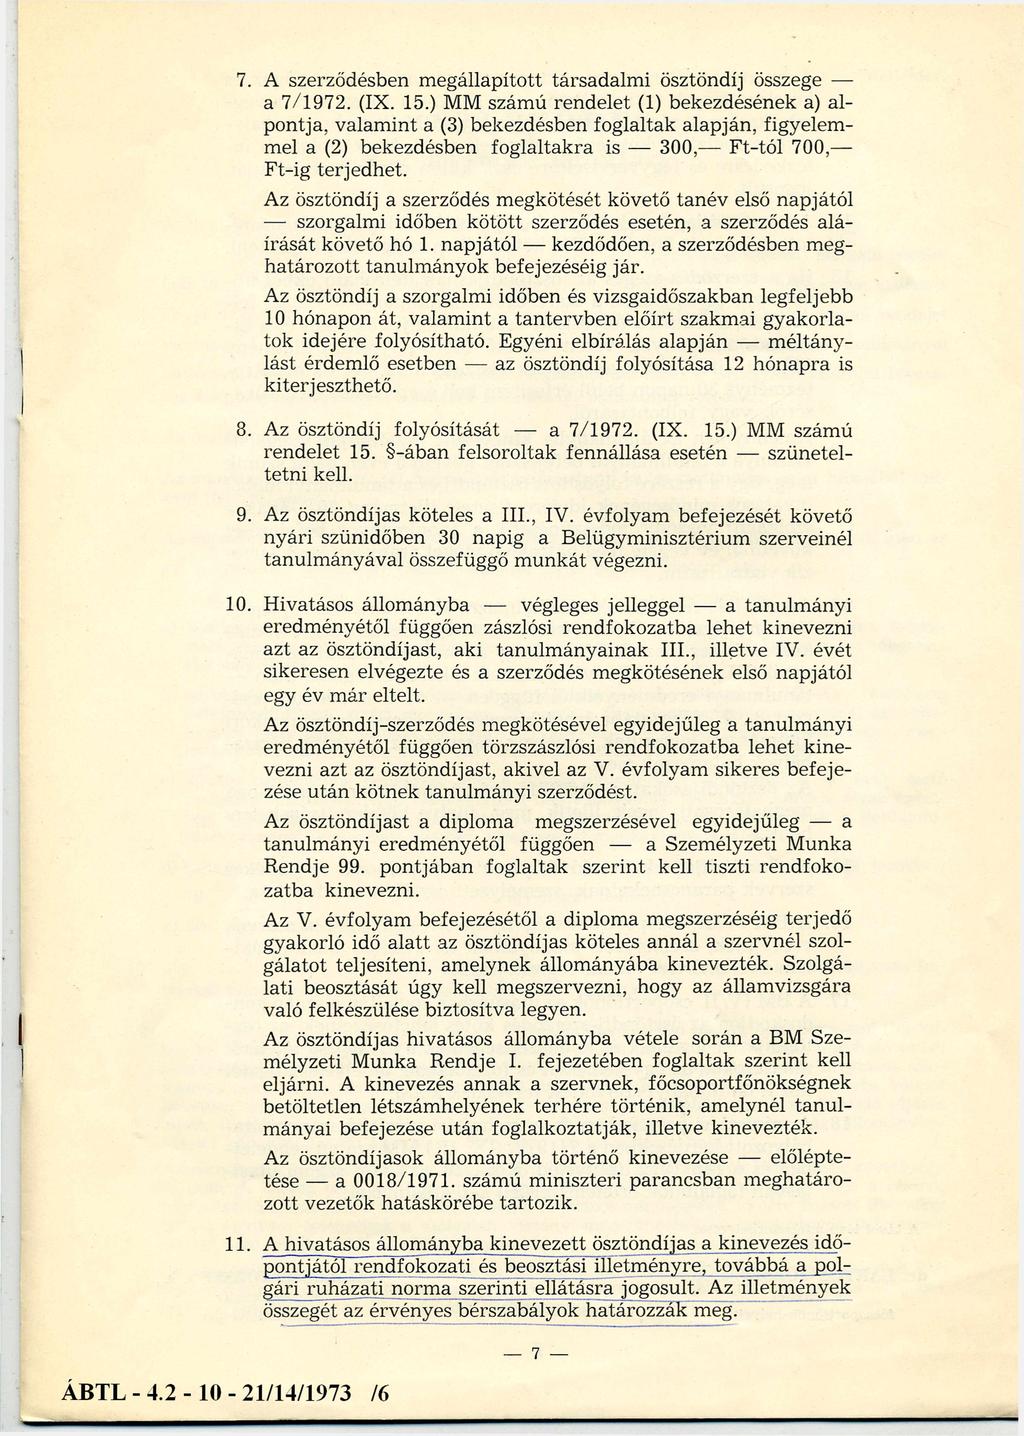 7. A szerződésben megállapított társadalmi ösztöndíj összege a 7/1972. (IX. 15.